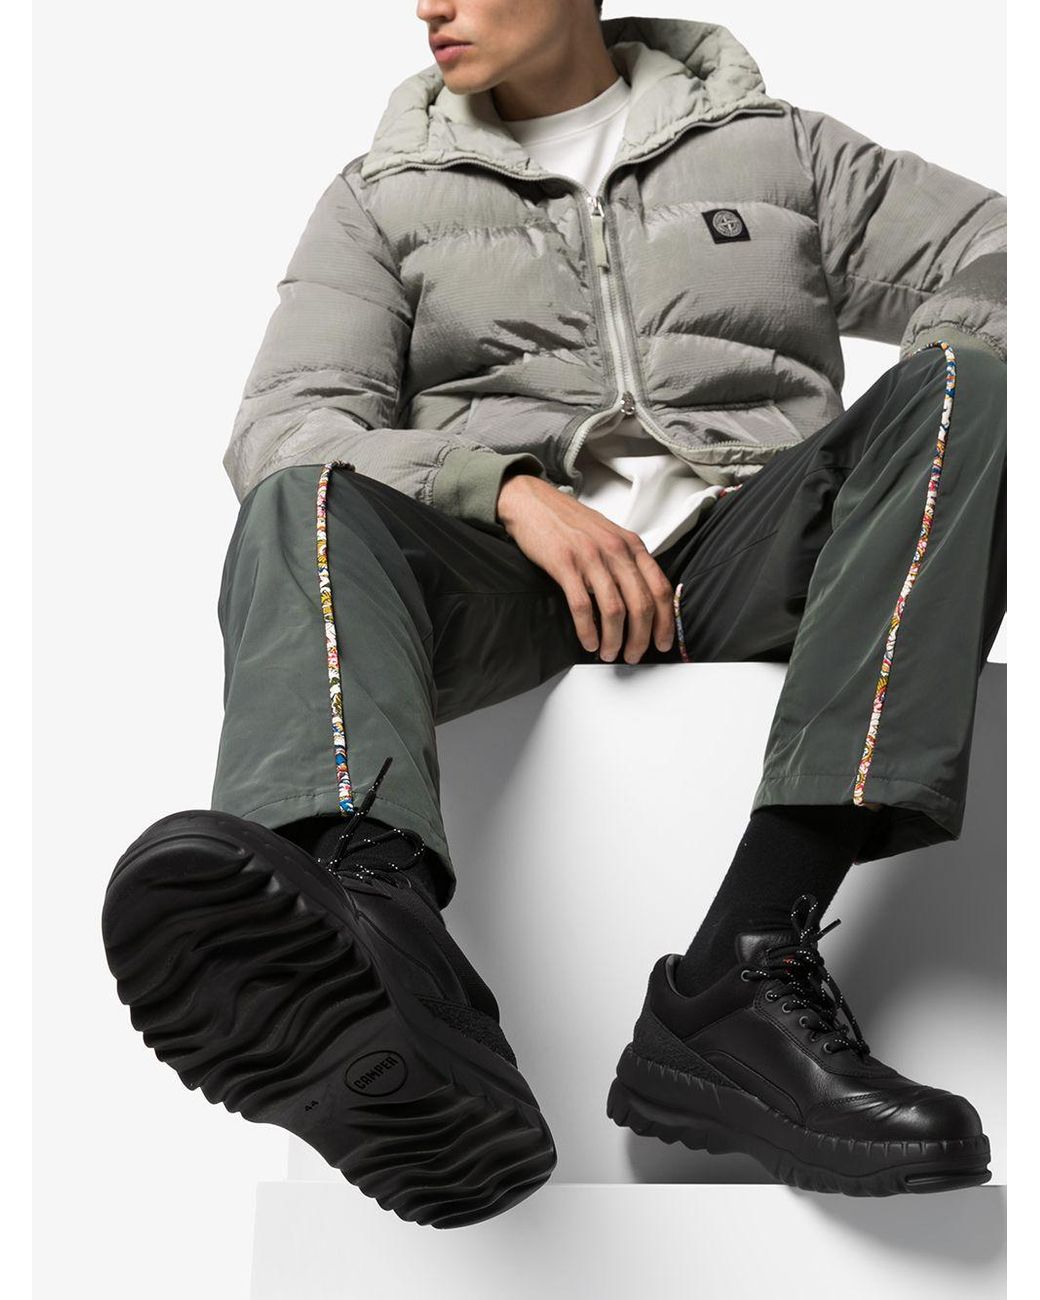 Camper X Kiko Kostadinov Panelled Leather Sneakers in Black for Men | Lyst